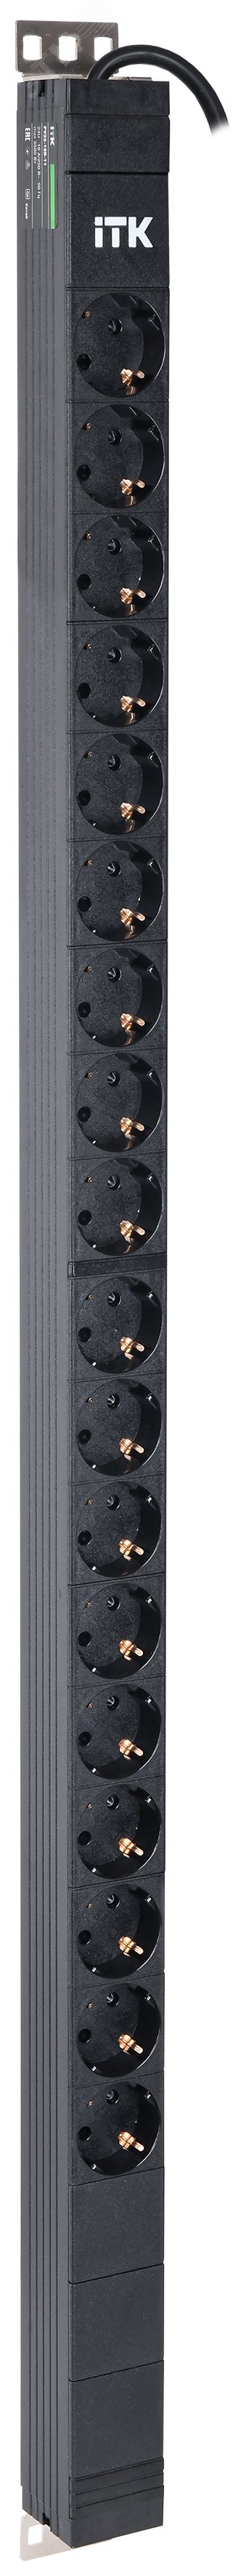 Блок распределения питания ITK PDU вертикальный 24U 1 фаза 16А 18 розеток Schuko (немецкий стандарт) кабель 3м вилка Schuko (немецкий стандарт) PV22-18D-11 ITK